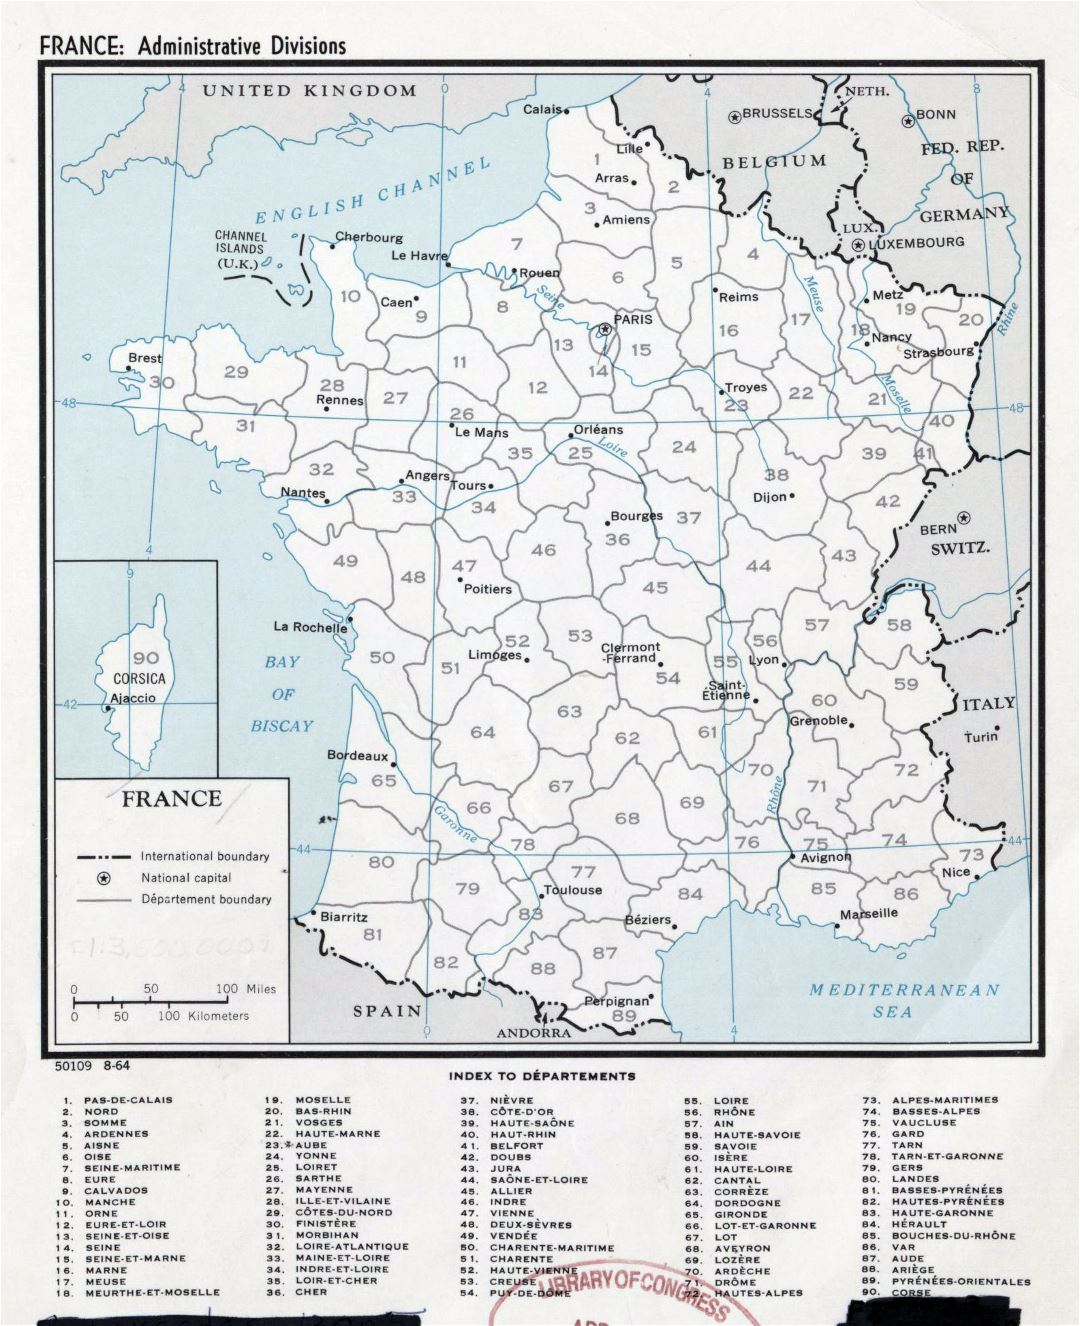 Gran detalle divisiones administrativas mapa de Francia - 1964